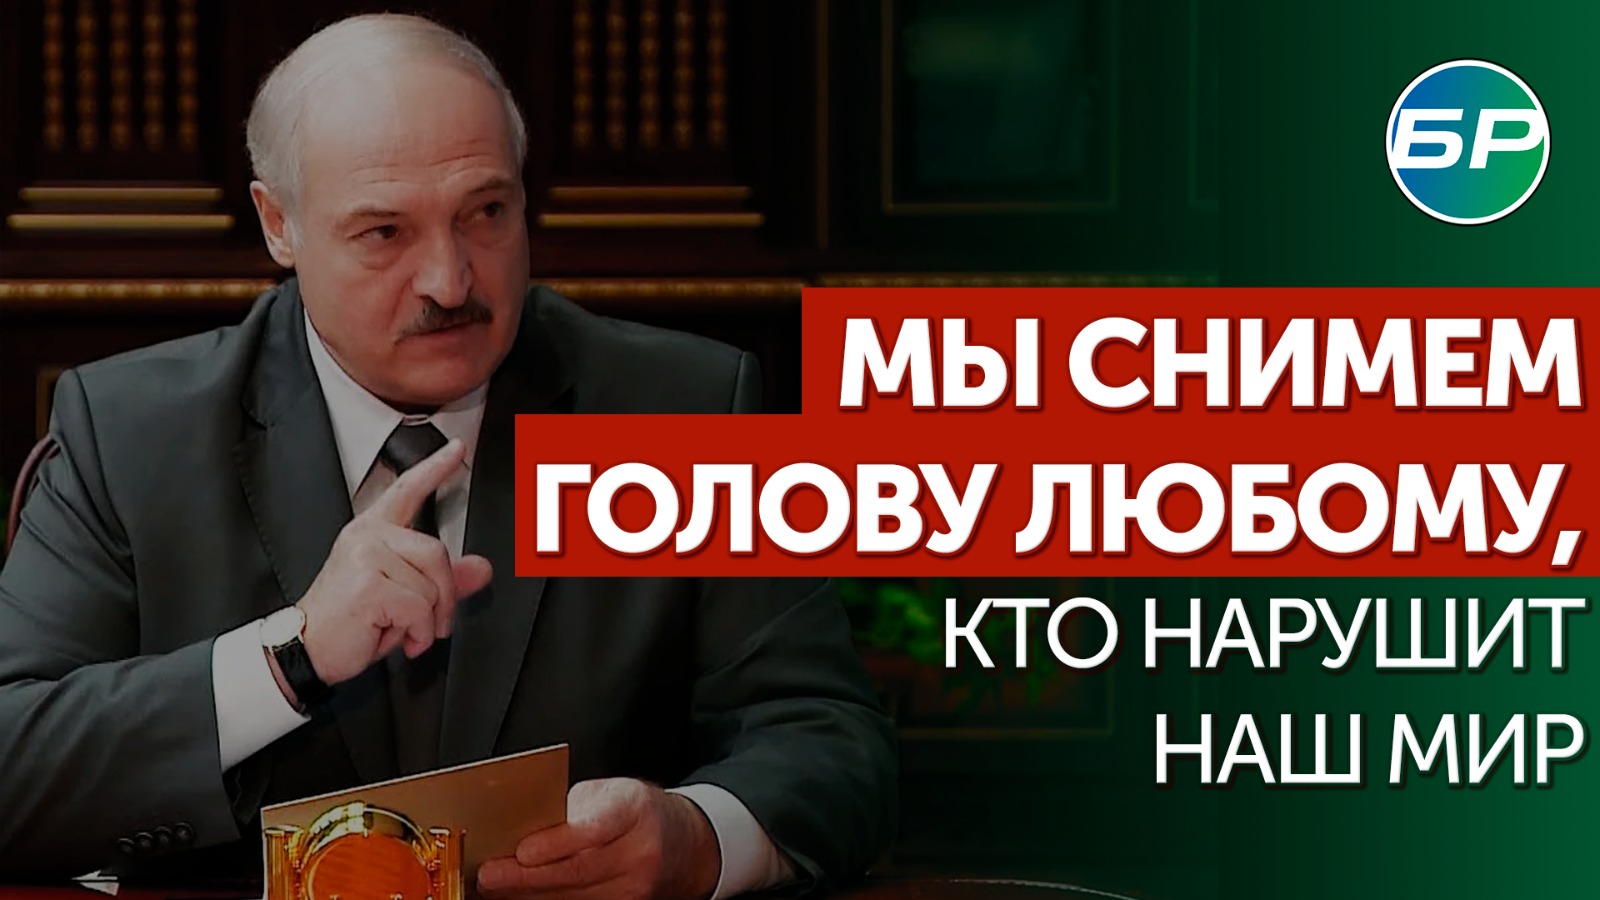 Лукашенко: мы снесем голову любому, кто сегодня хочет нарушить мир и покой в нашей стране